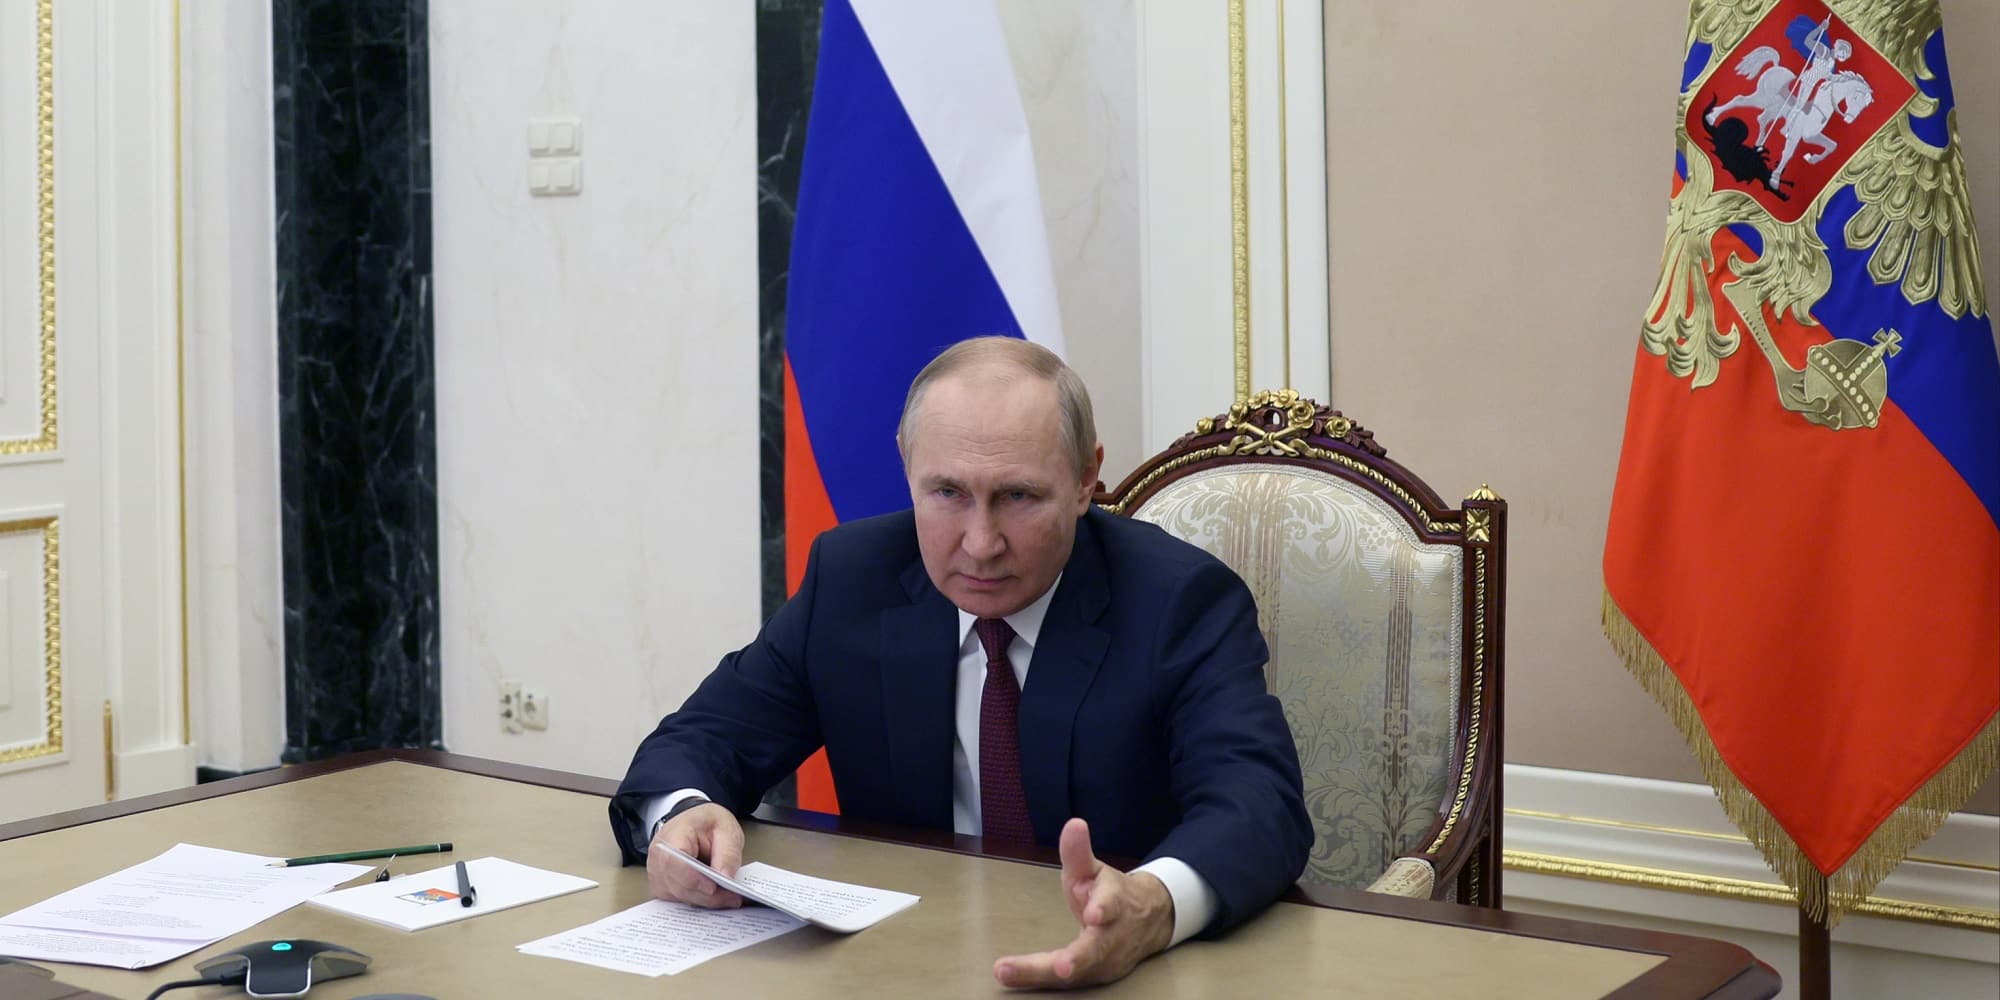 Ο Βλαντιμίρ Πούτιν στην τηλεδιάσκεψη με το υπουργικό συμβούλιο στη Ρωσία